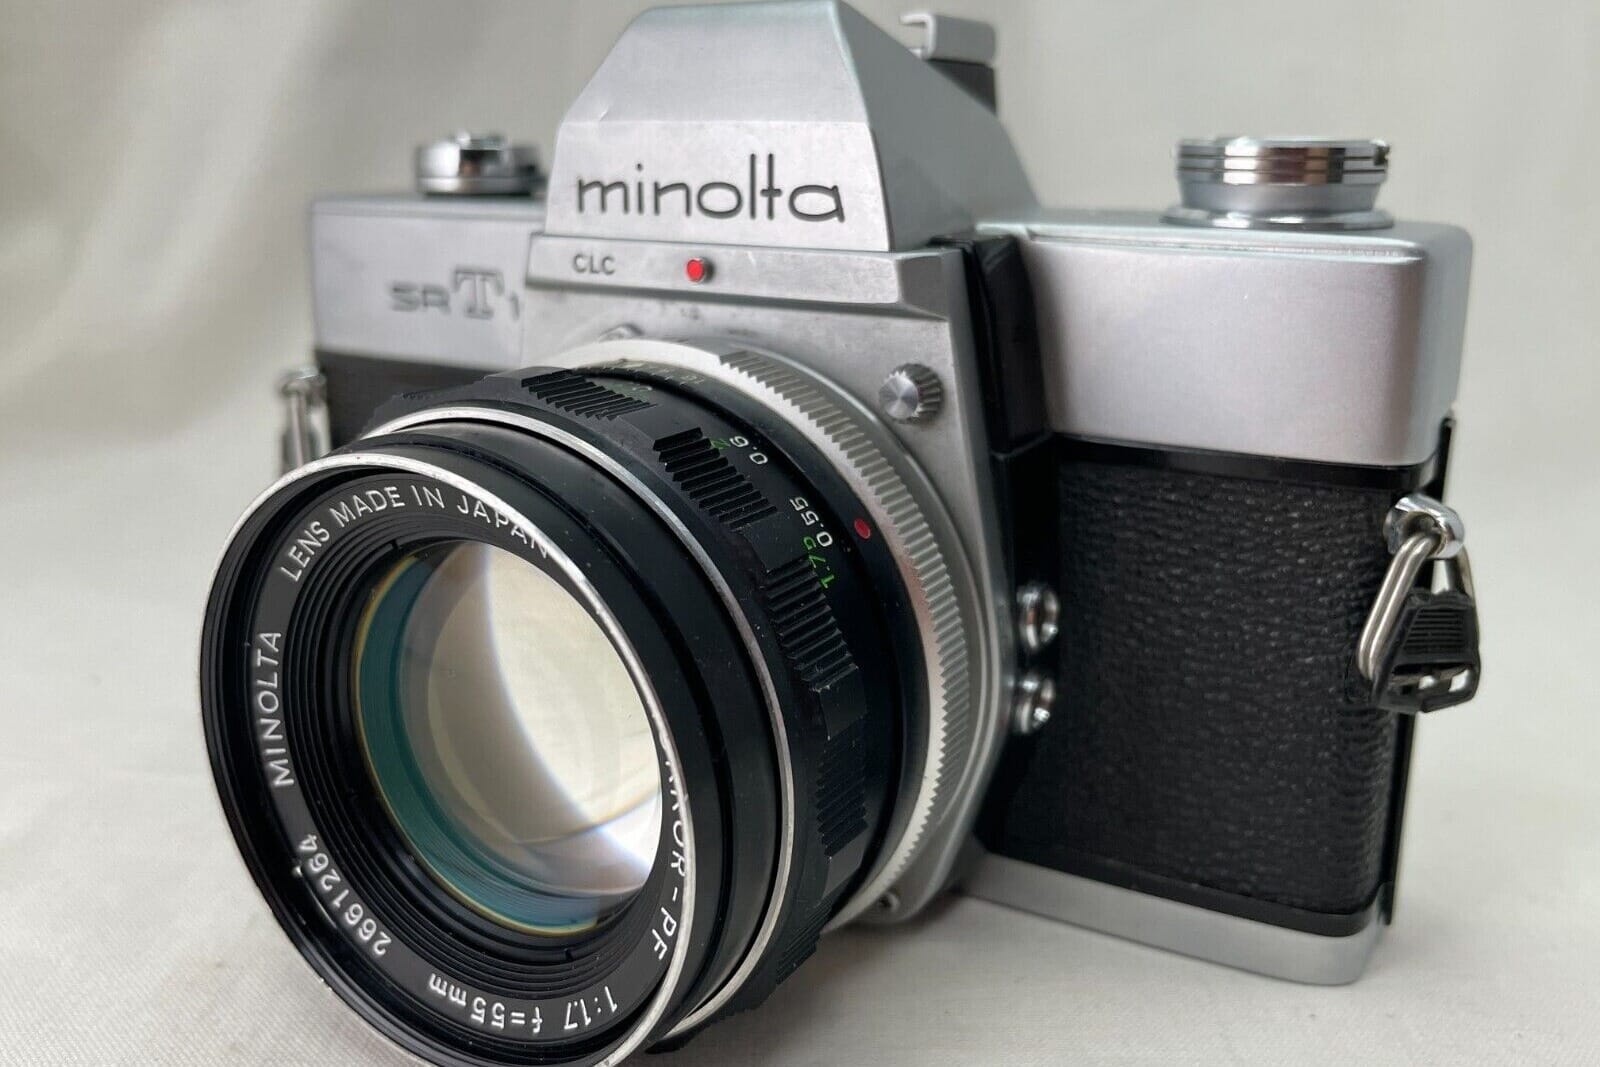 Minolta SRT 101 35MM SLR Film Camera